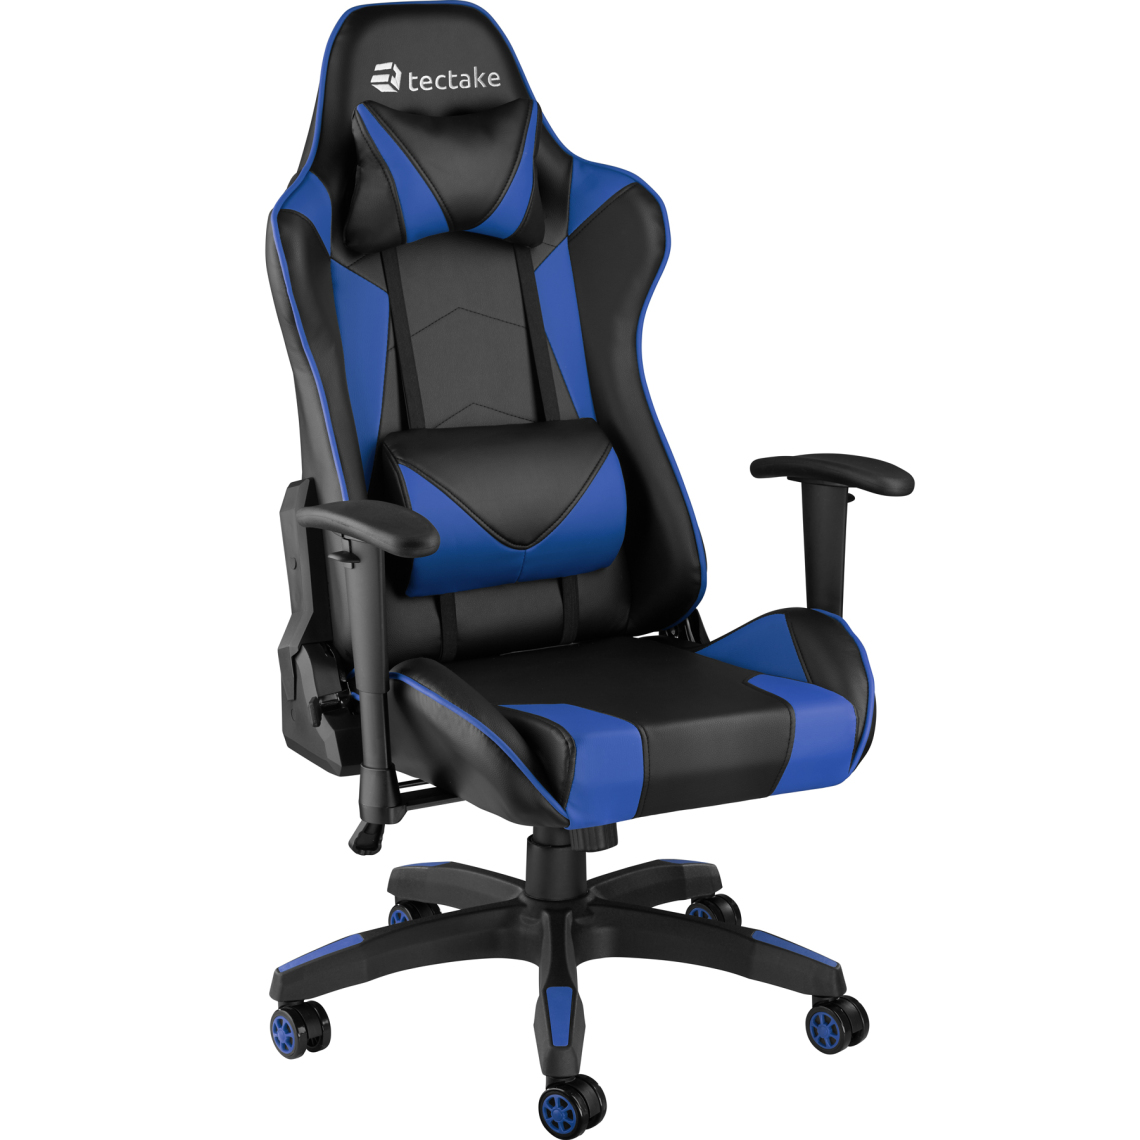 Tectake - Chaise gamer TWINK - noir/bleu - Chaises